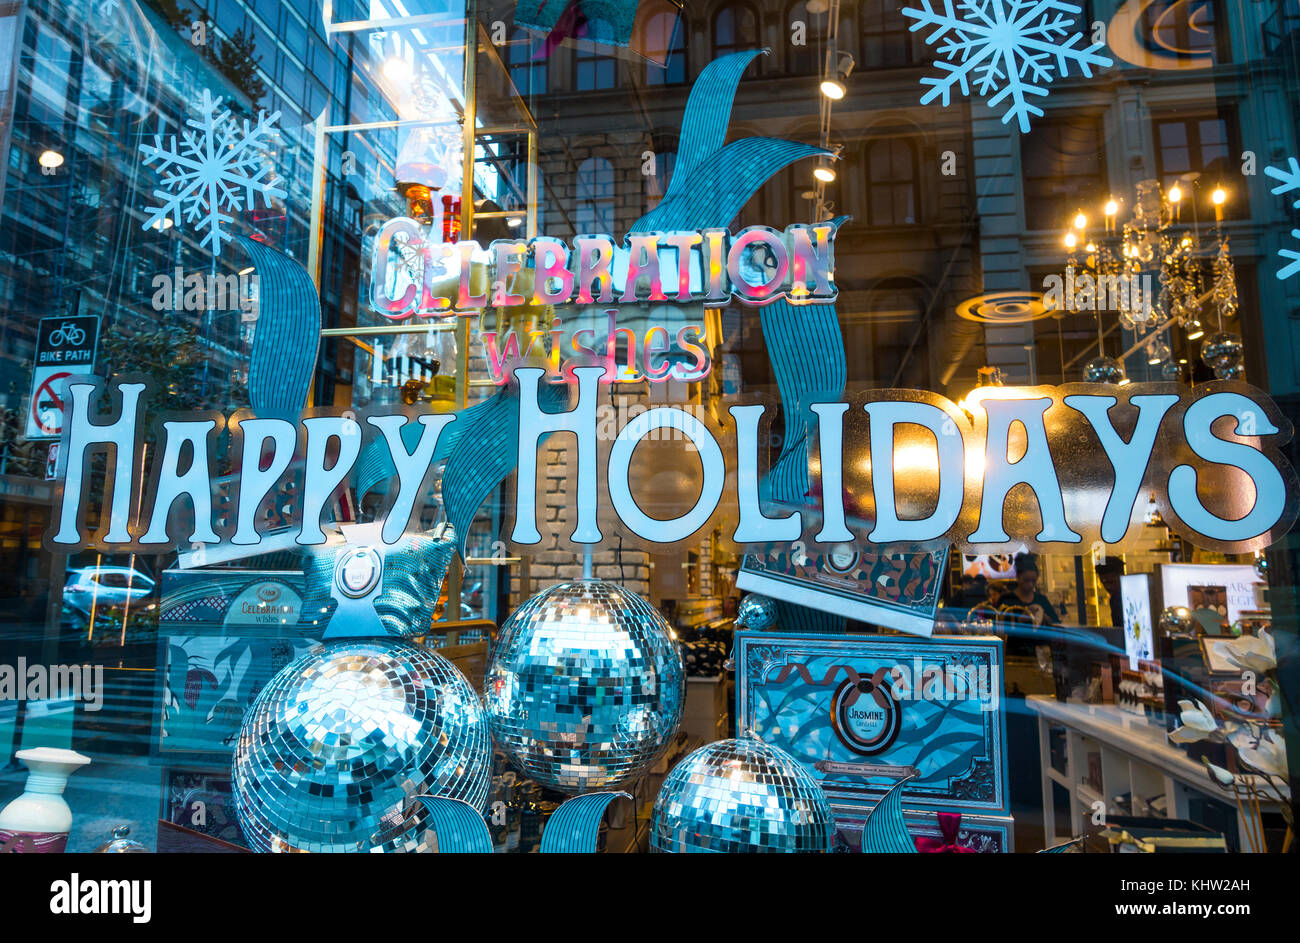 Feier Wünsche für einen schönen Urlaub in einem Schaufenster in Lower Manhattan. Stockfoto